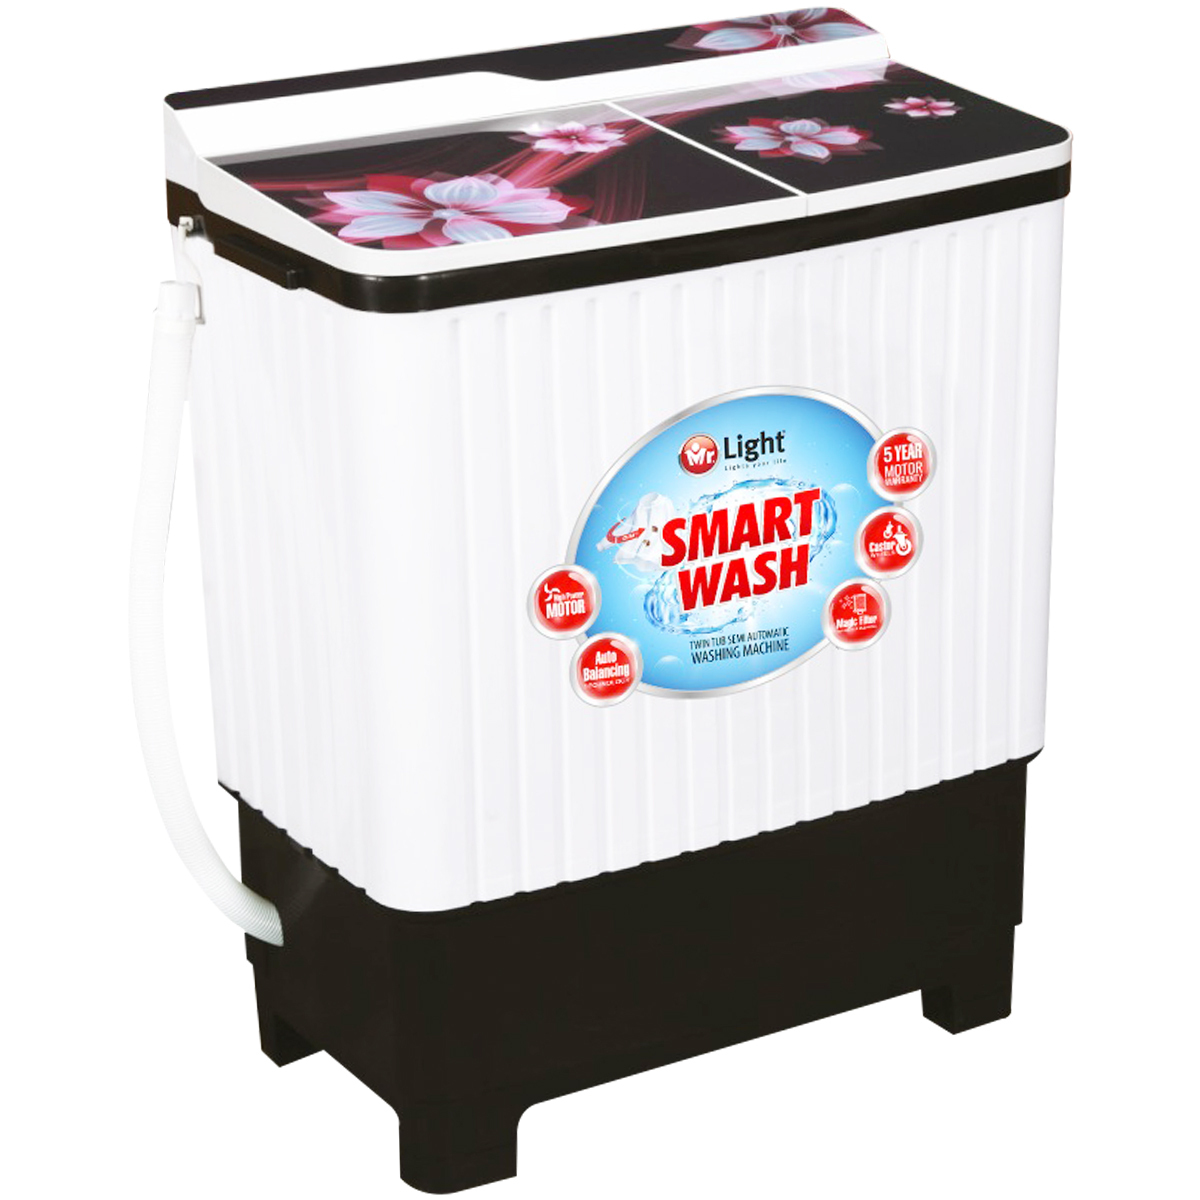 Mr Light Washing Machine Semi Automatic MR 2107 8.5 Kg